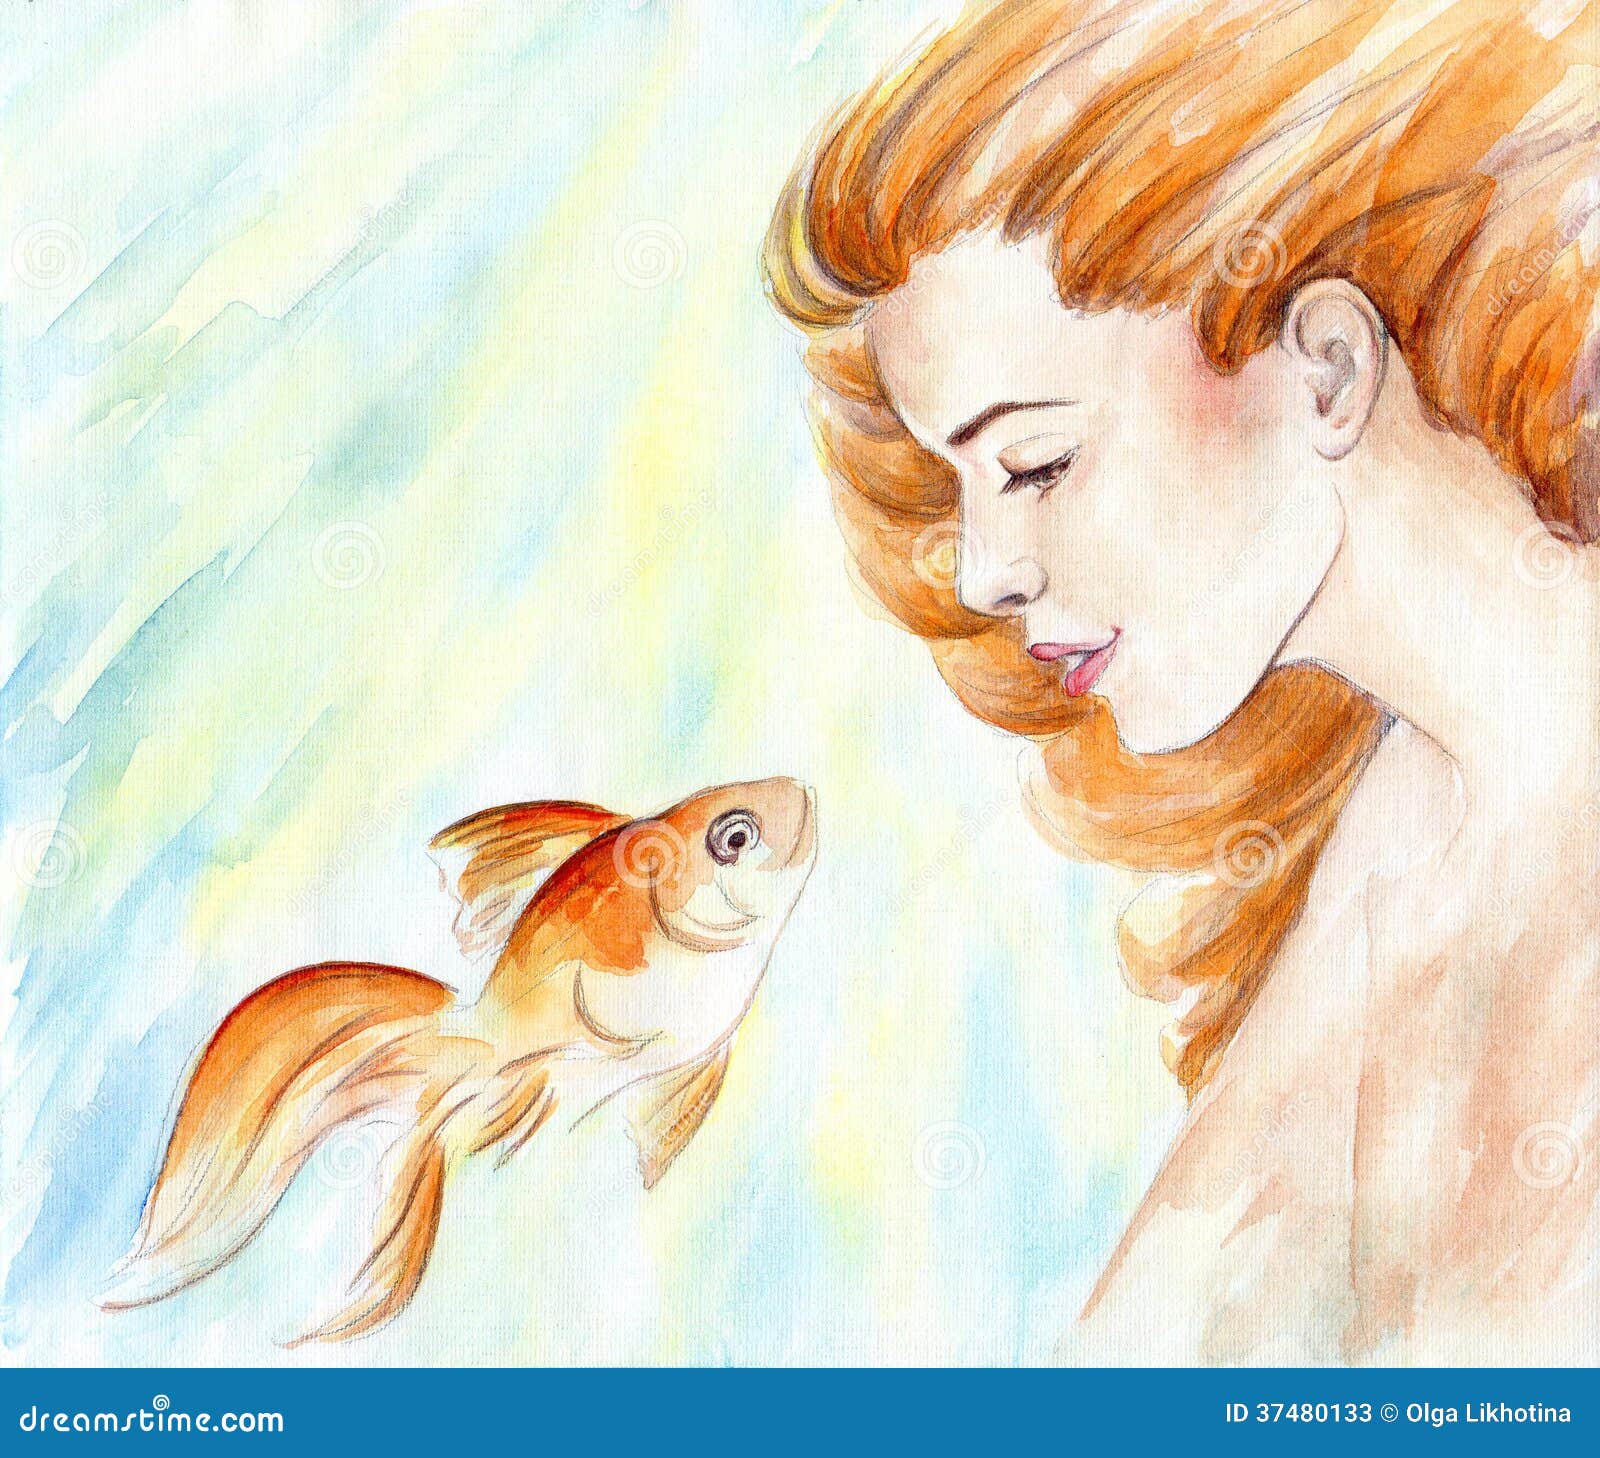 Три желания рыбке. Девушка и Золотая рыбка. Девочка с золотой рыбкой. Золотая рыбка иллюстрация. Картина девочка и Золотая рыбка.